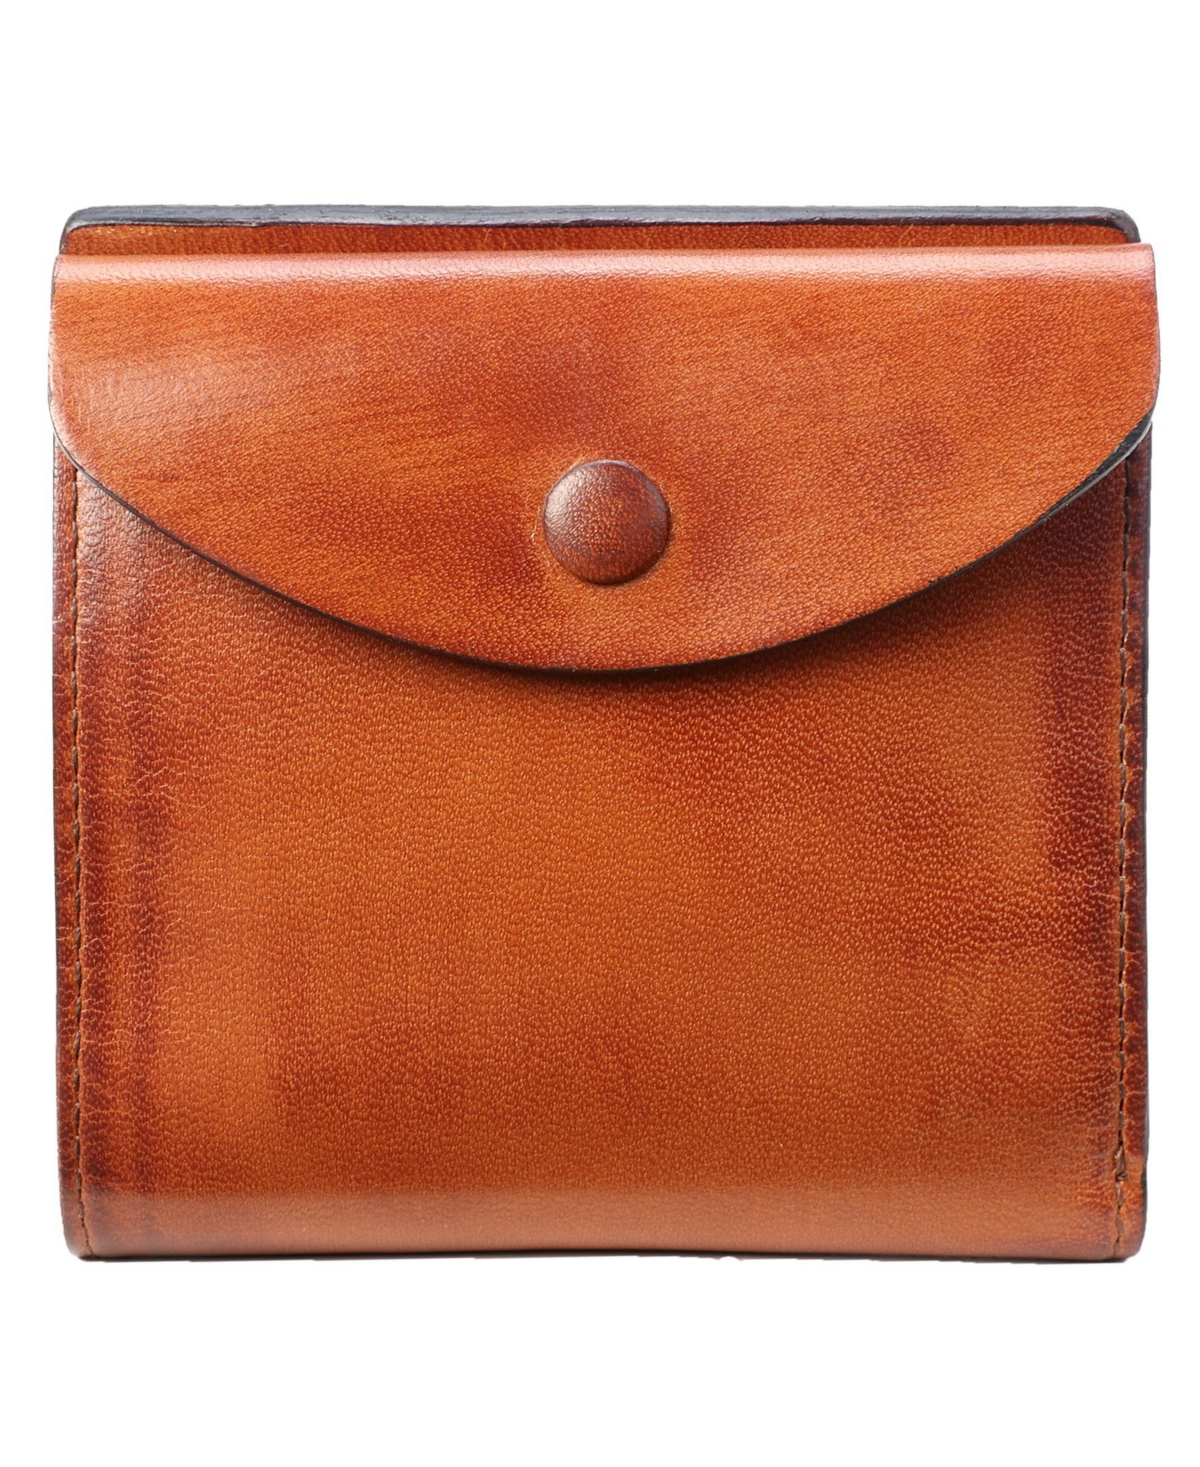 Women's Genuine Leather Snapper Wallet - Cognac